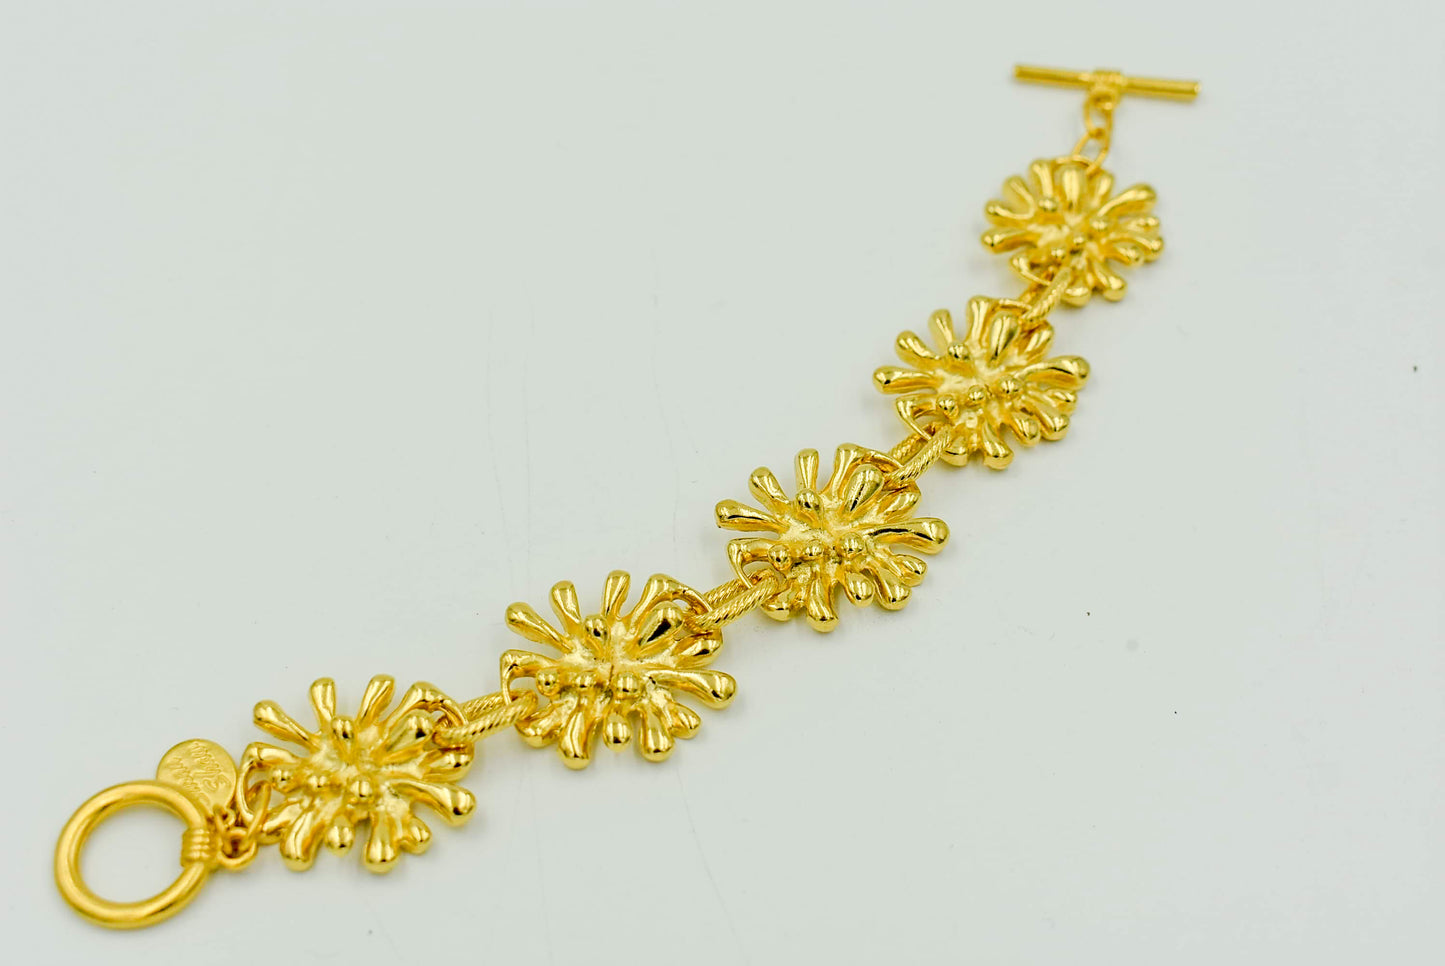 Handcast Gold Sunburst Bracelet